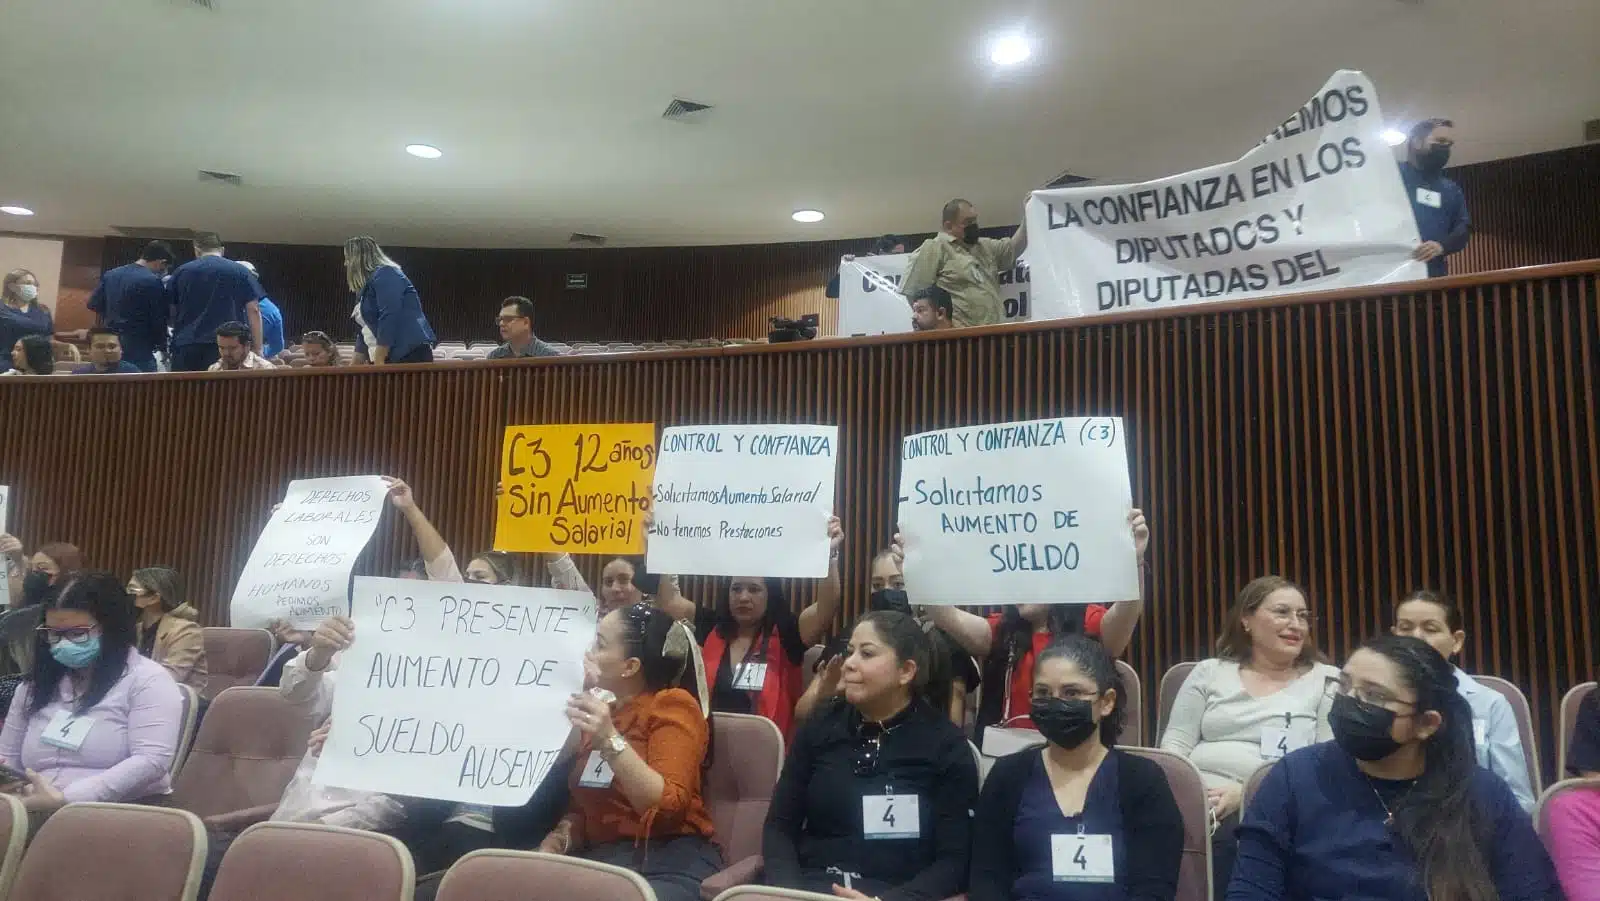 Manifestación de los trabajadores del C3 en Culiacán